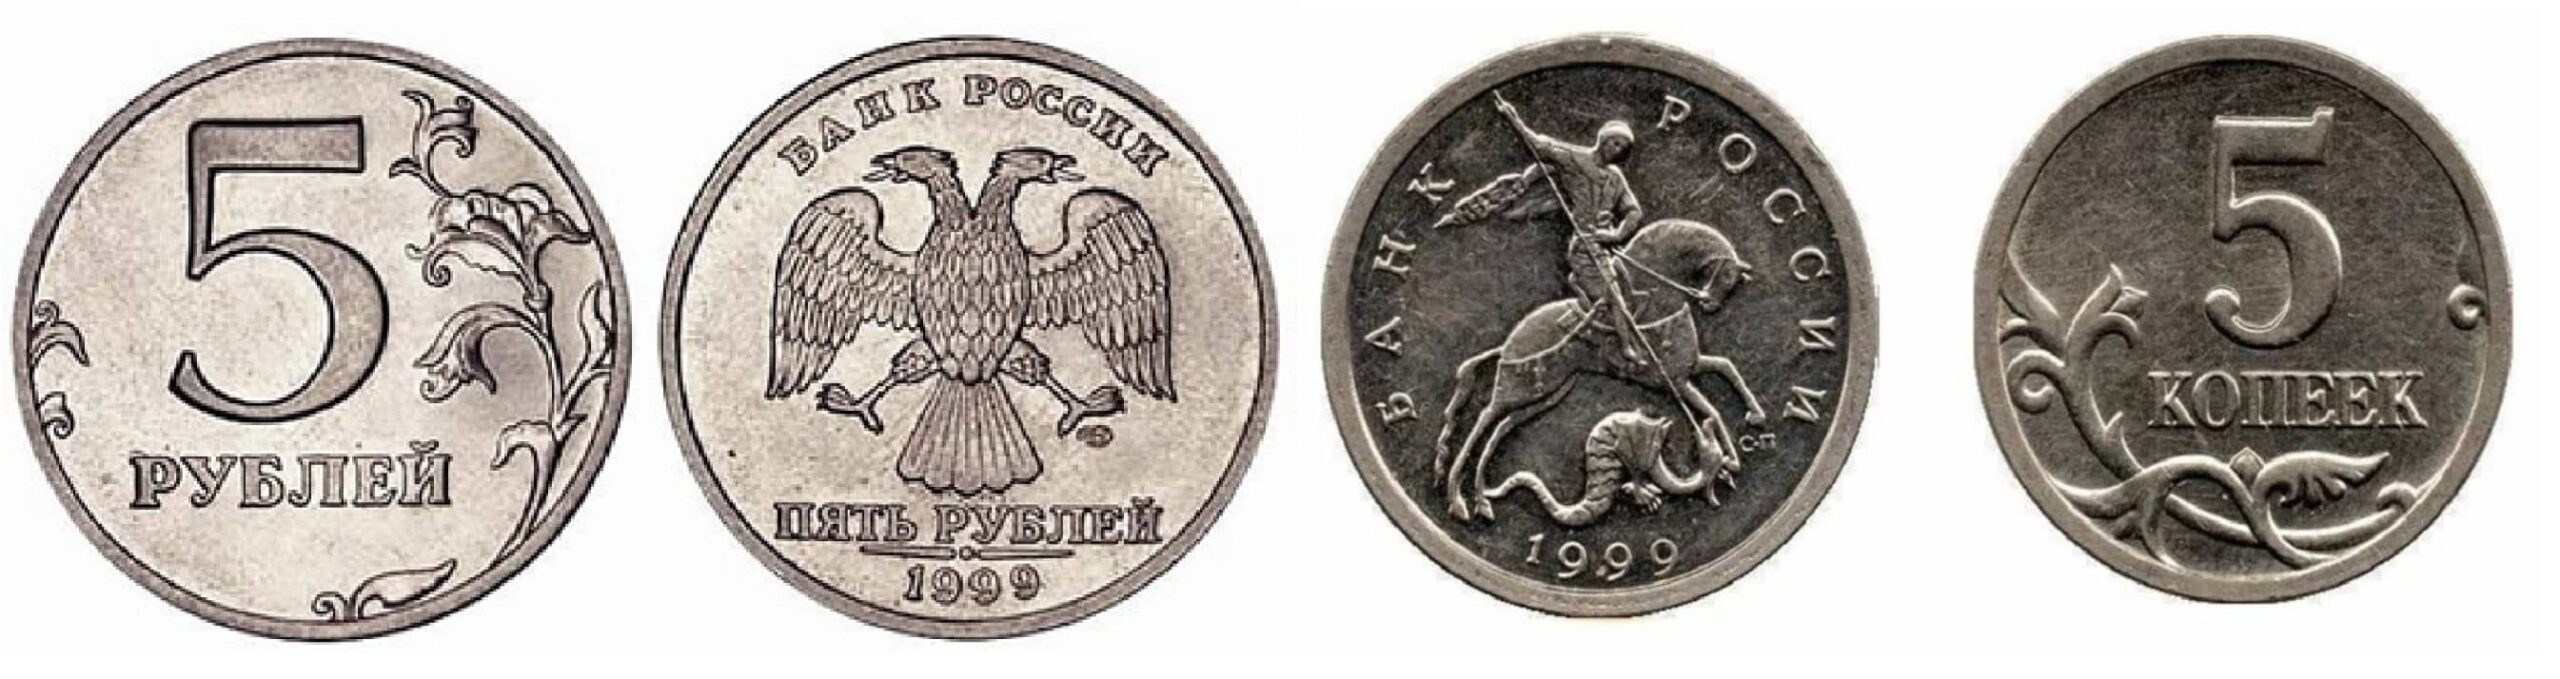 25 рублей 80. 5 Копеек 1999. Привидение монета. Польша 2 гроша 1999 год - герб.